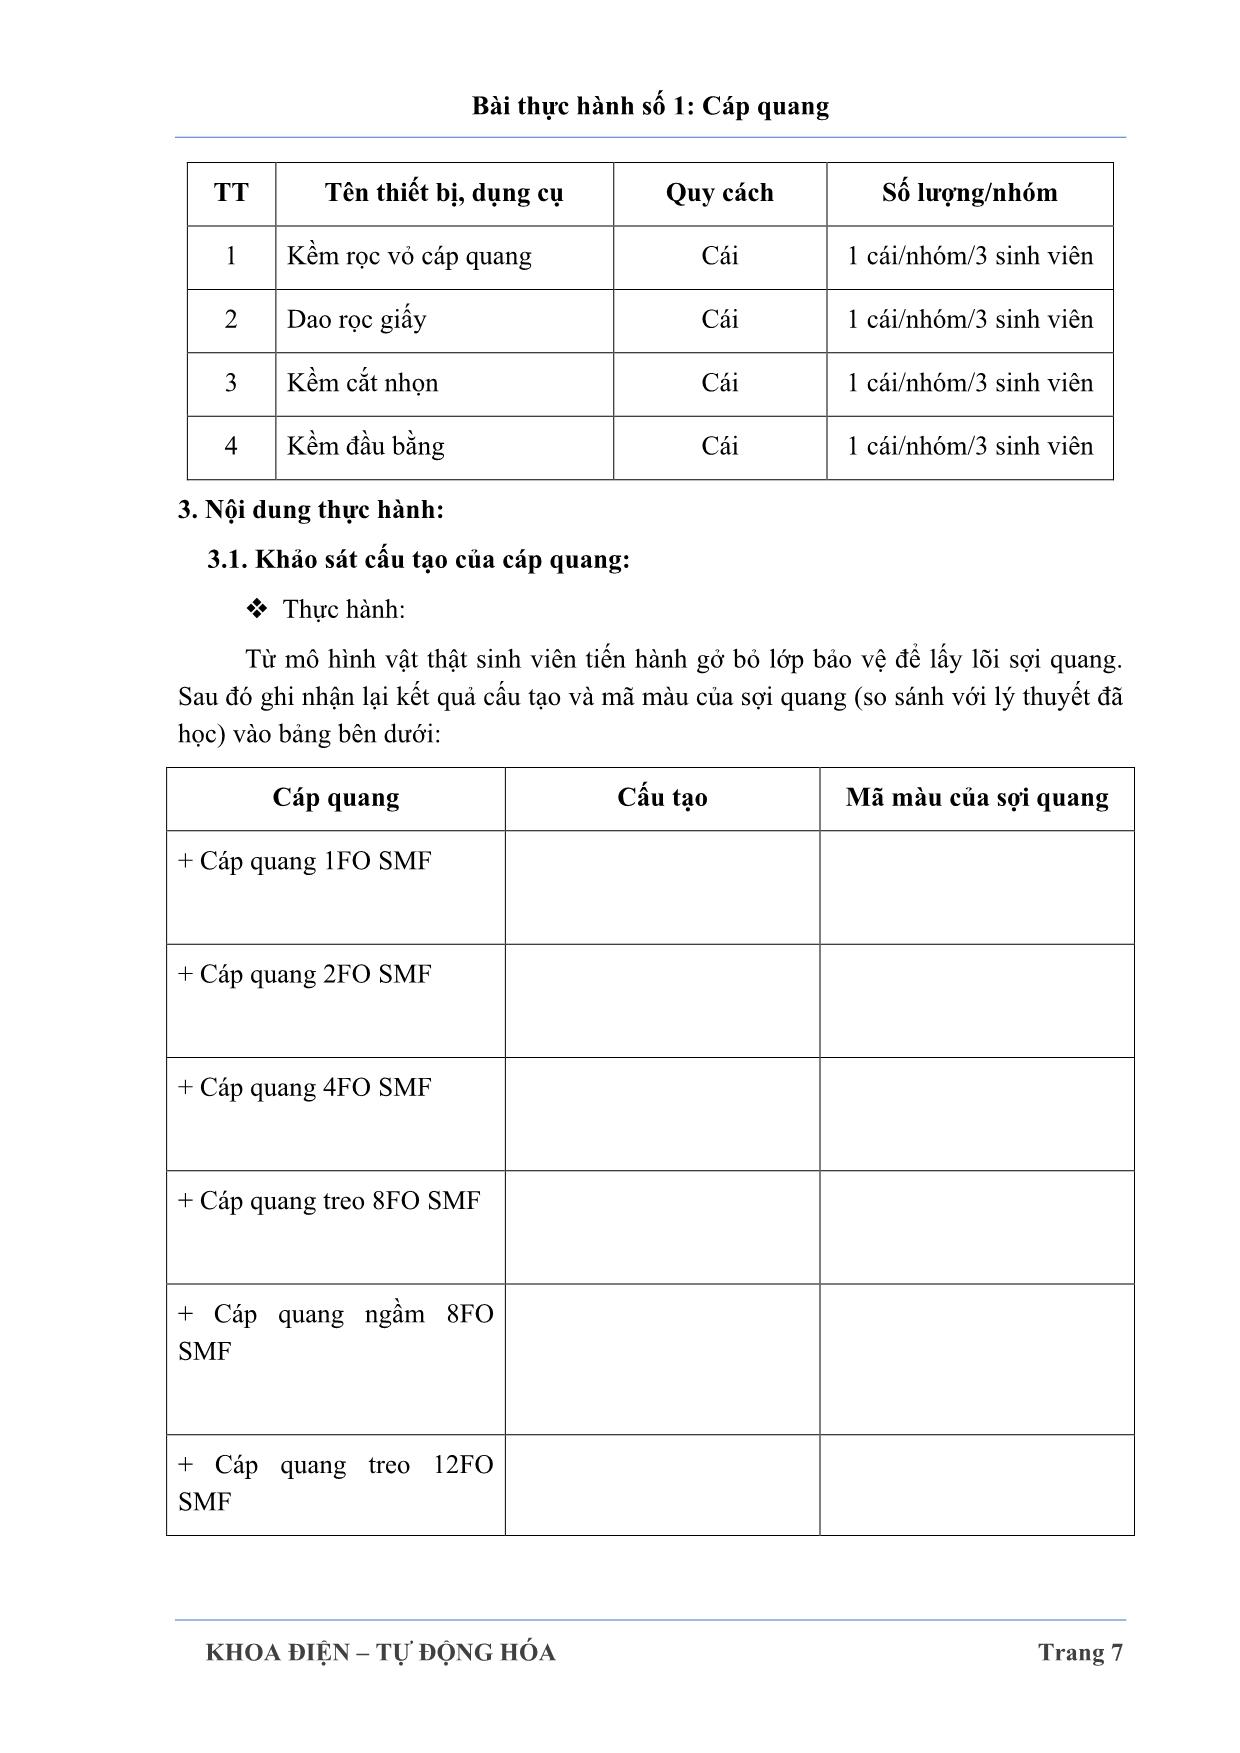 Bài tập thực hành môn Thực tập thông tin quang trang 10